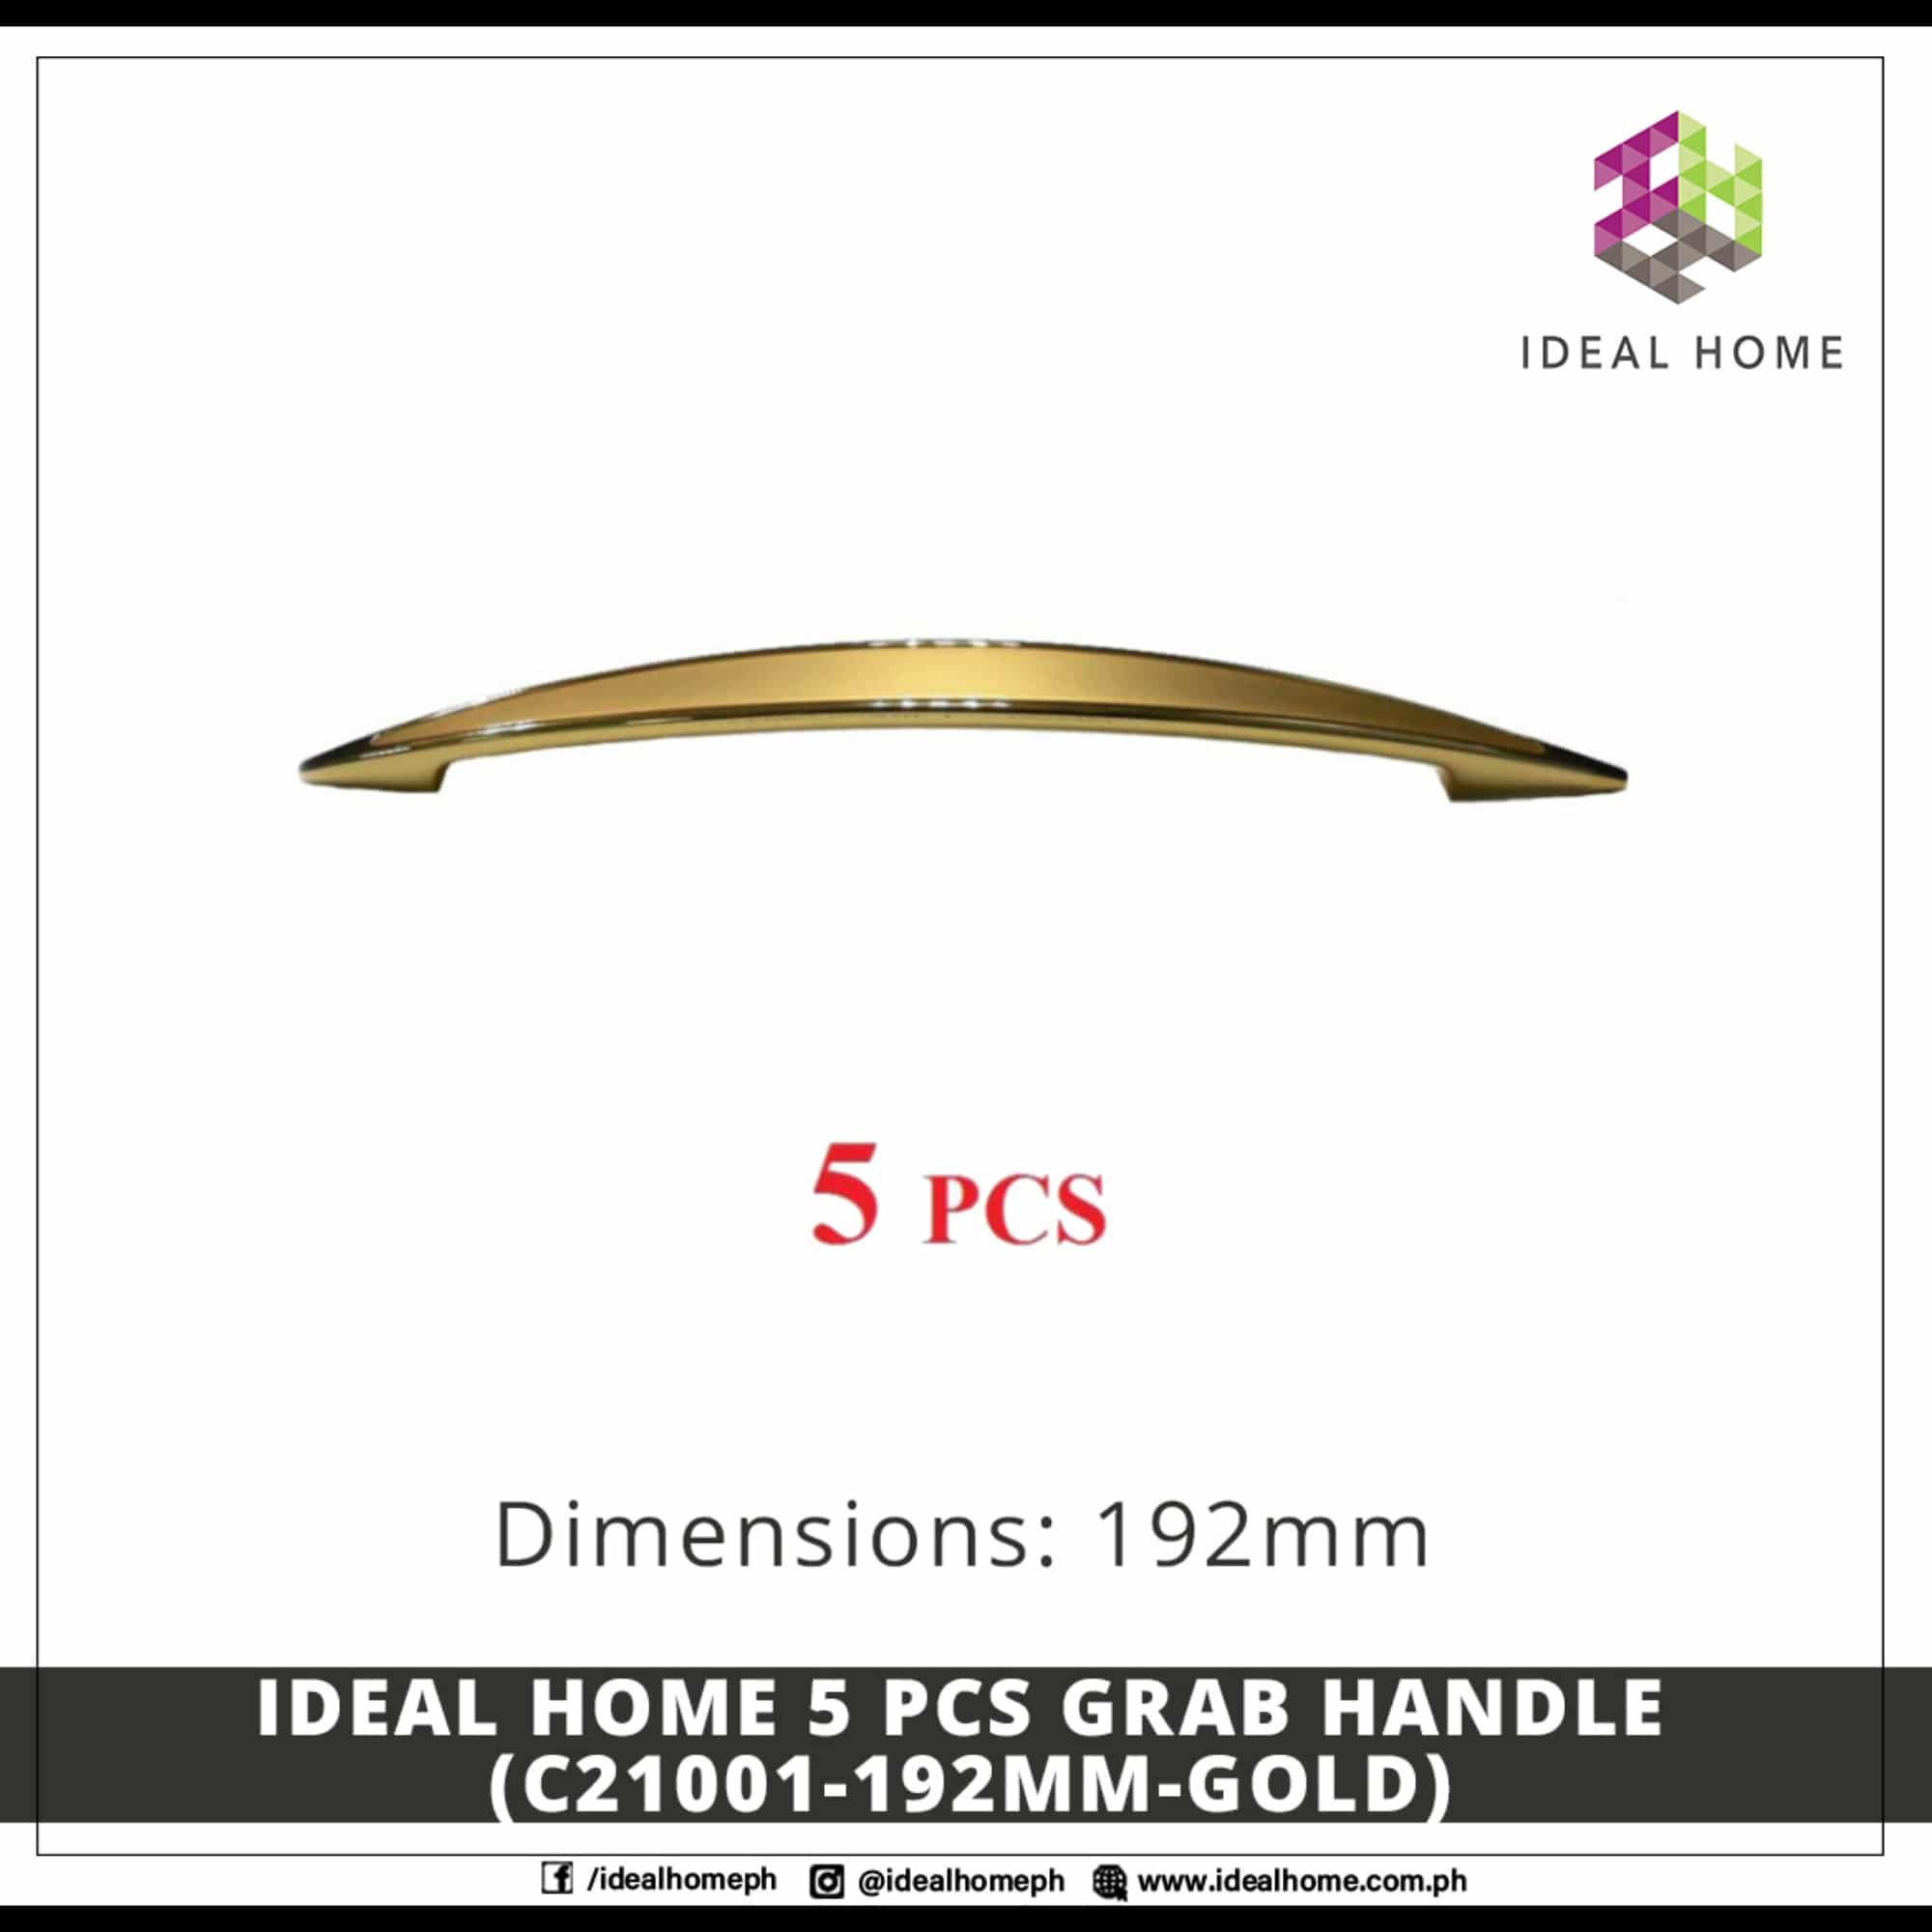 Ideal Home 5 PCS Grab Handle (C21001-192mm-GOLD)